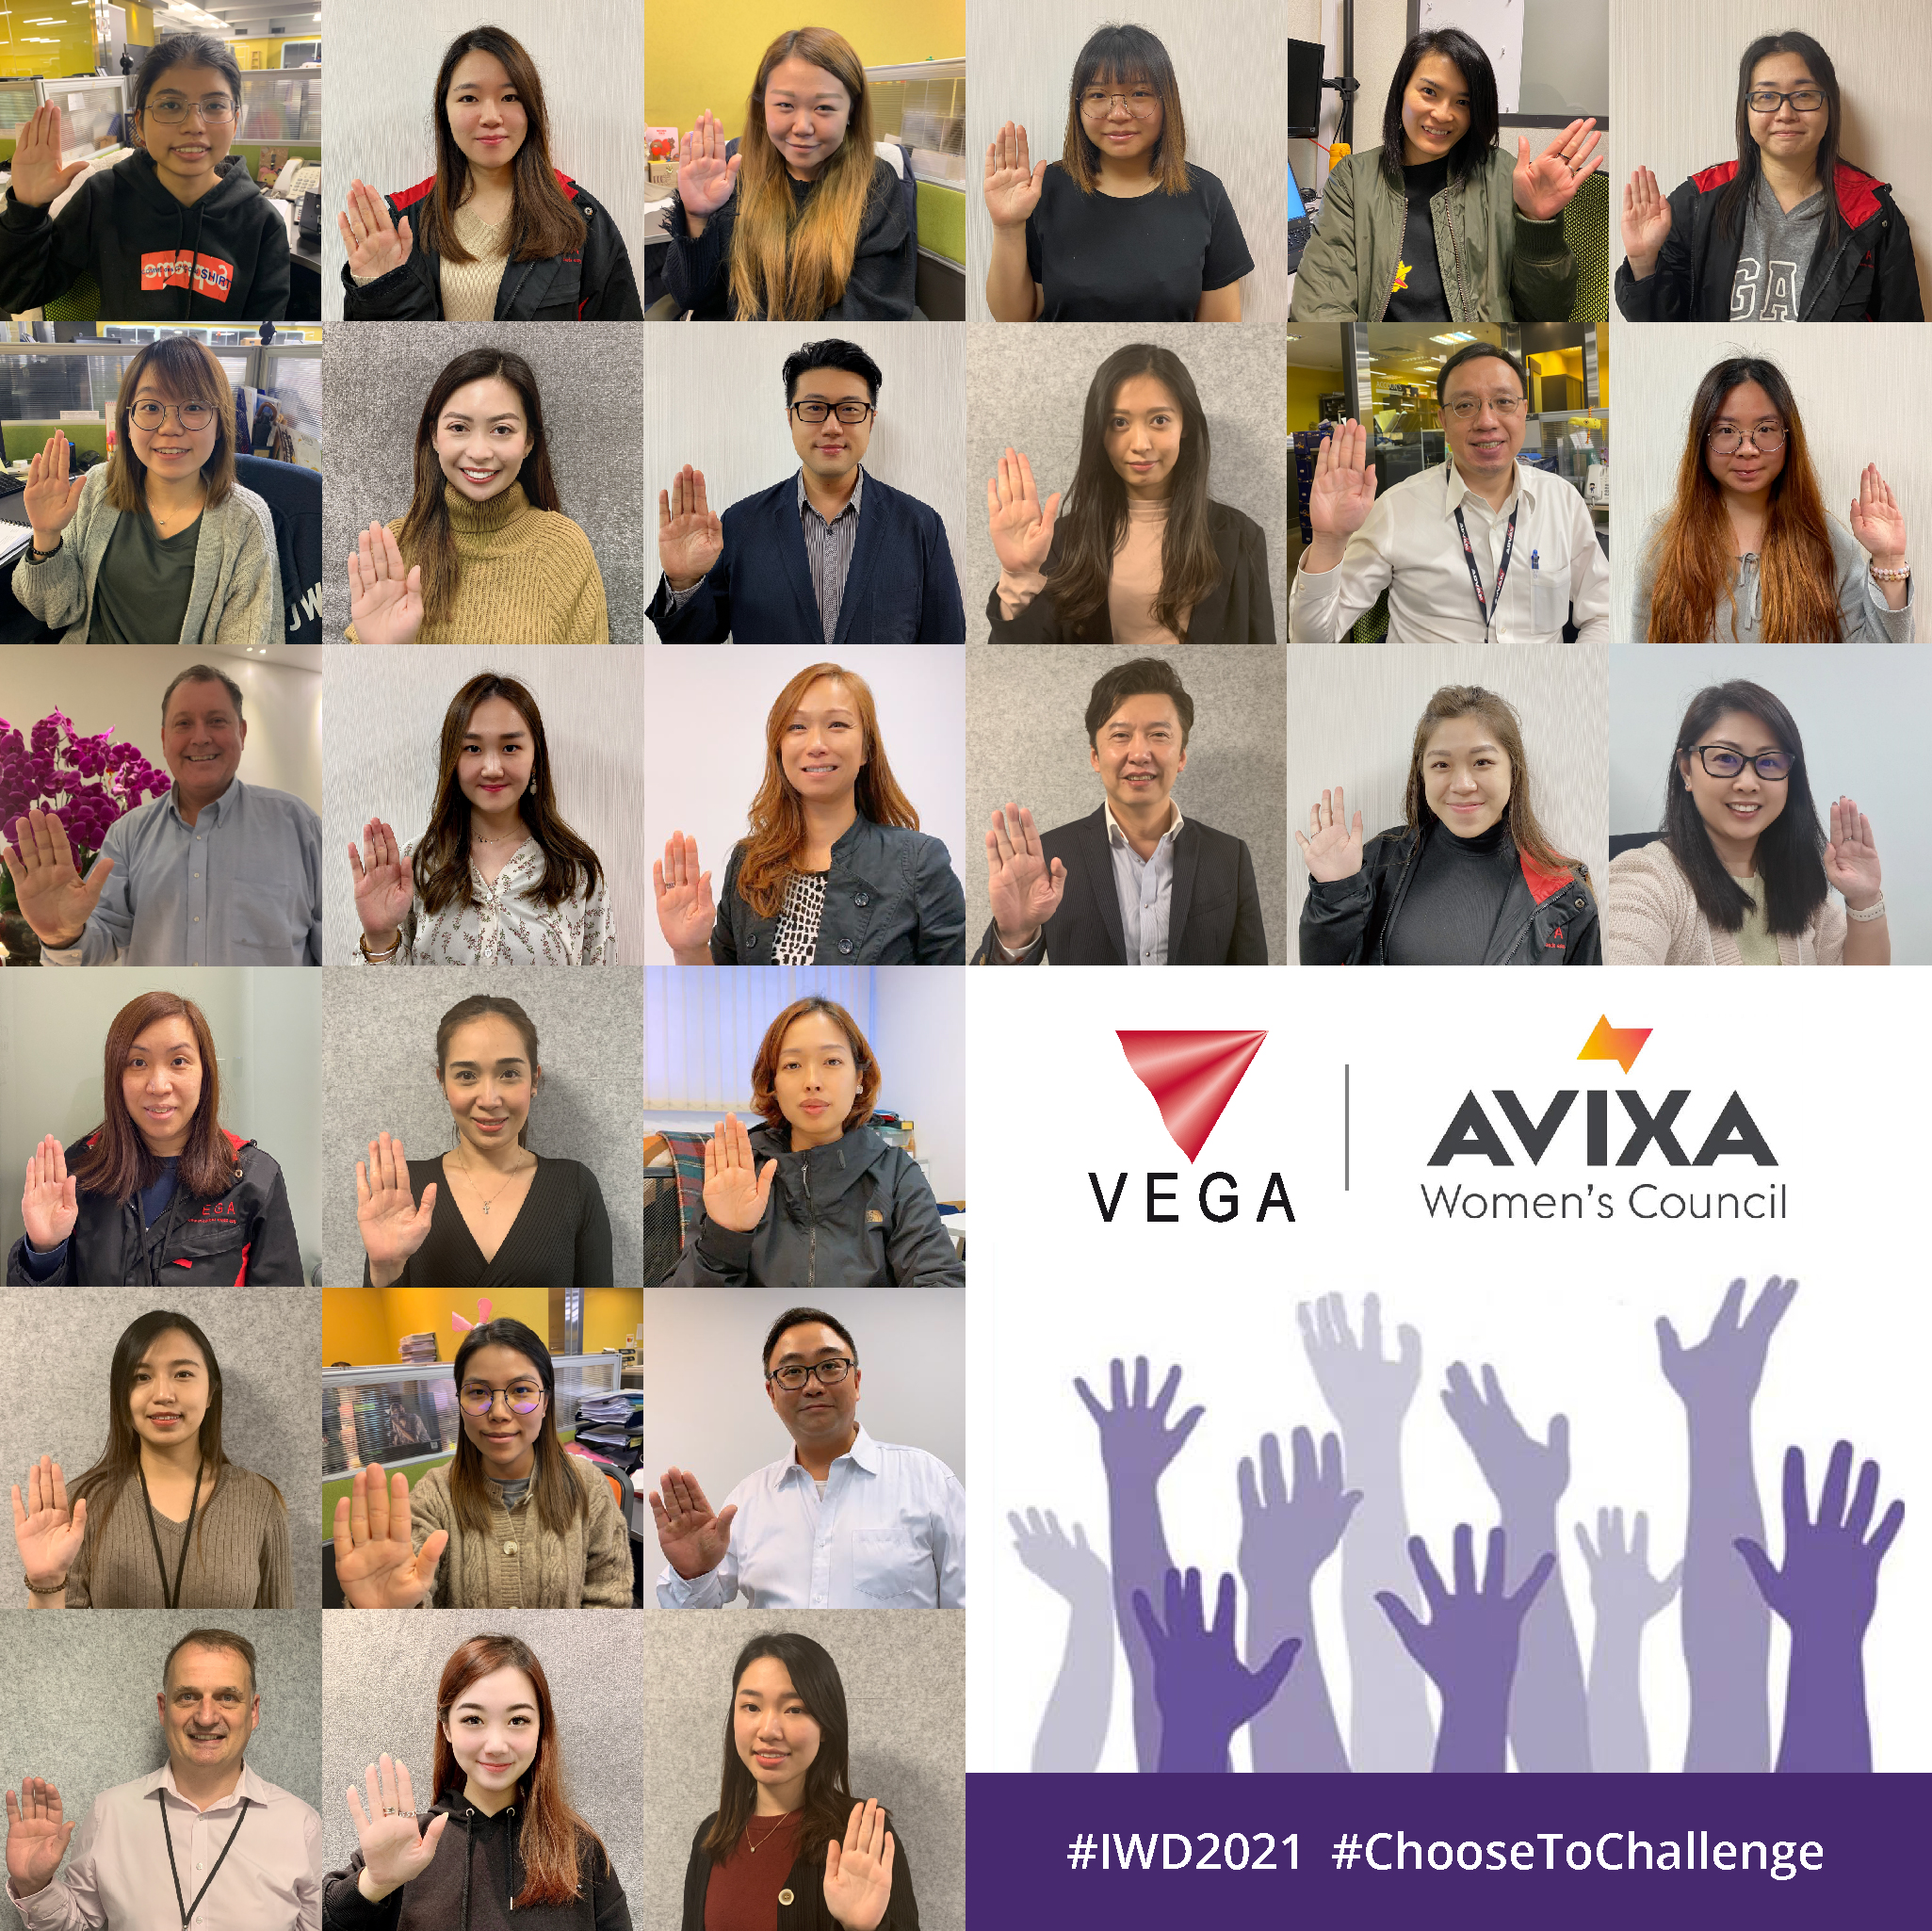 維嘉 Vega Global 慶祝國際婦女節並在 #ChooseToChallenge 活動上做出承諾